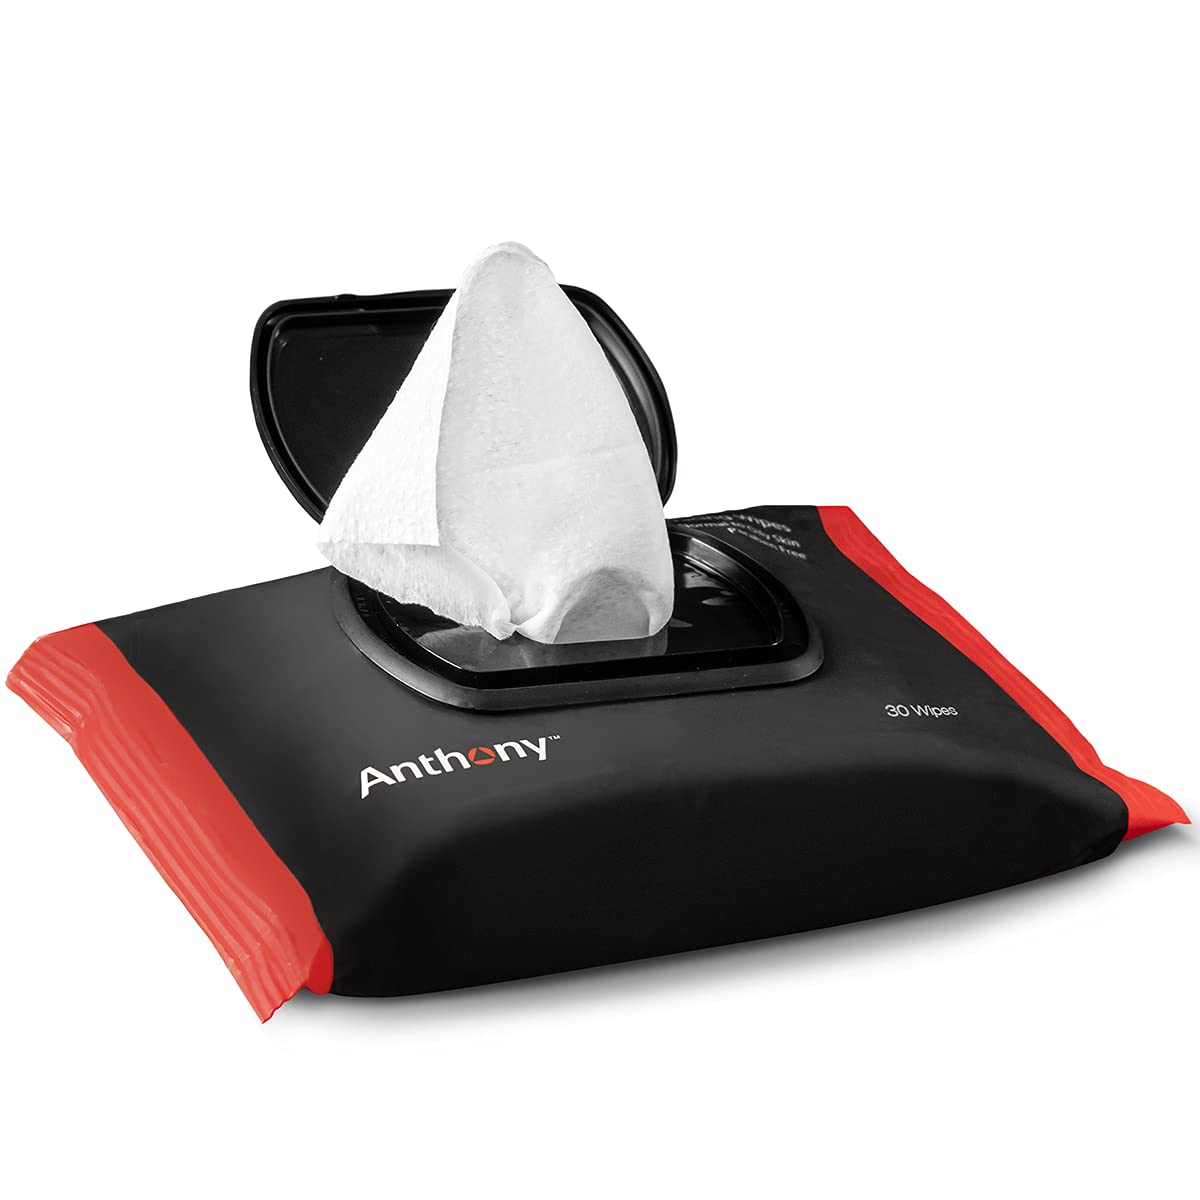 Anthony kompatibel - Glycolic Peeling & Resurfacing Wipes 30 Pcs